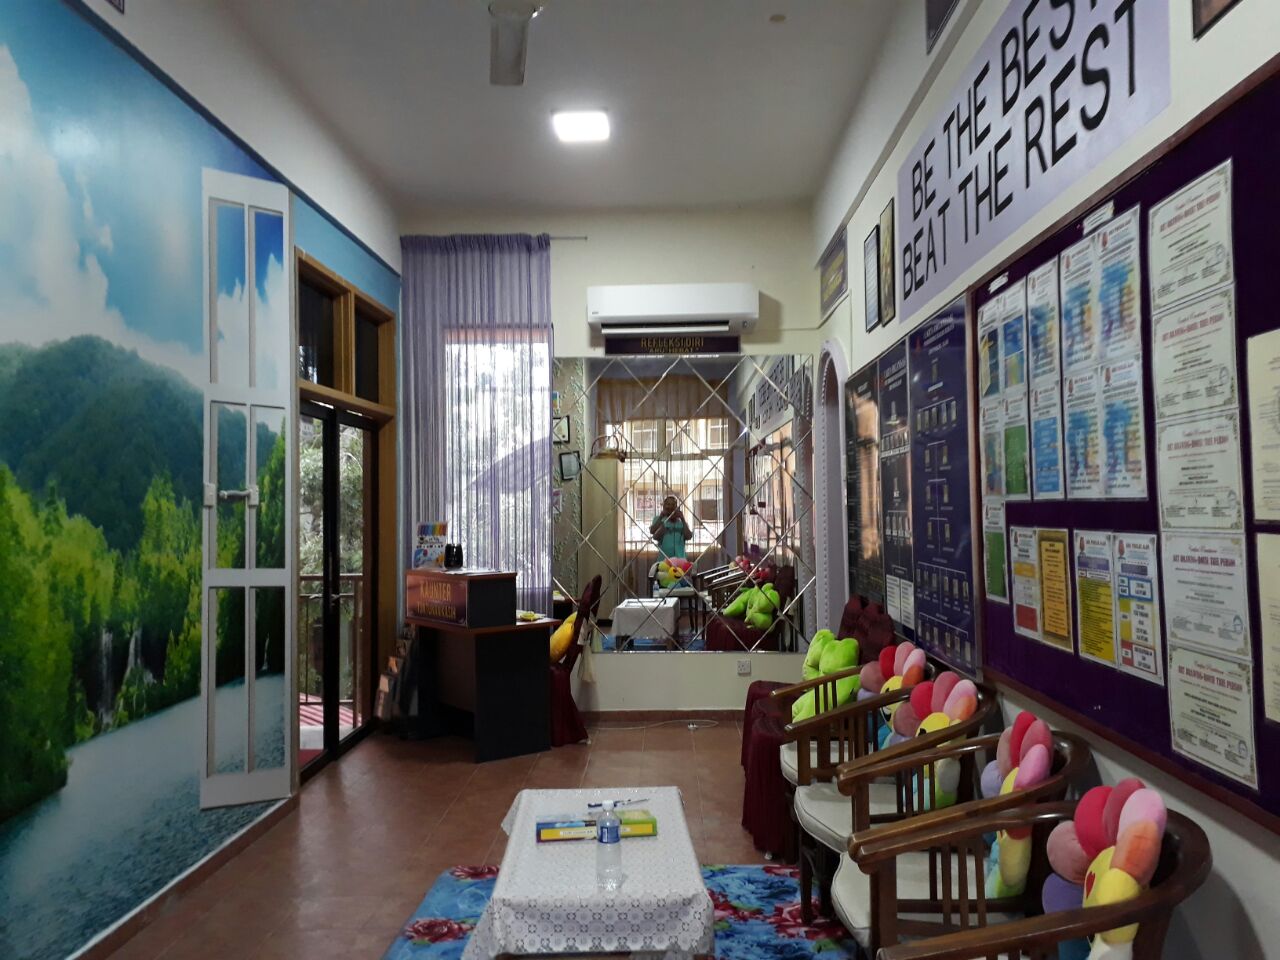 SMK Puncak Alam; Contoh Bilik Kaunseling Teraputik Dan Berfungsi - GURU